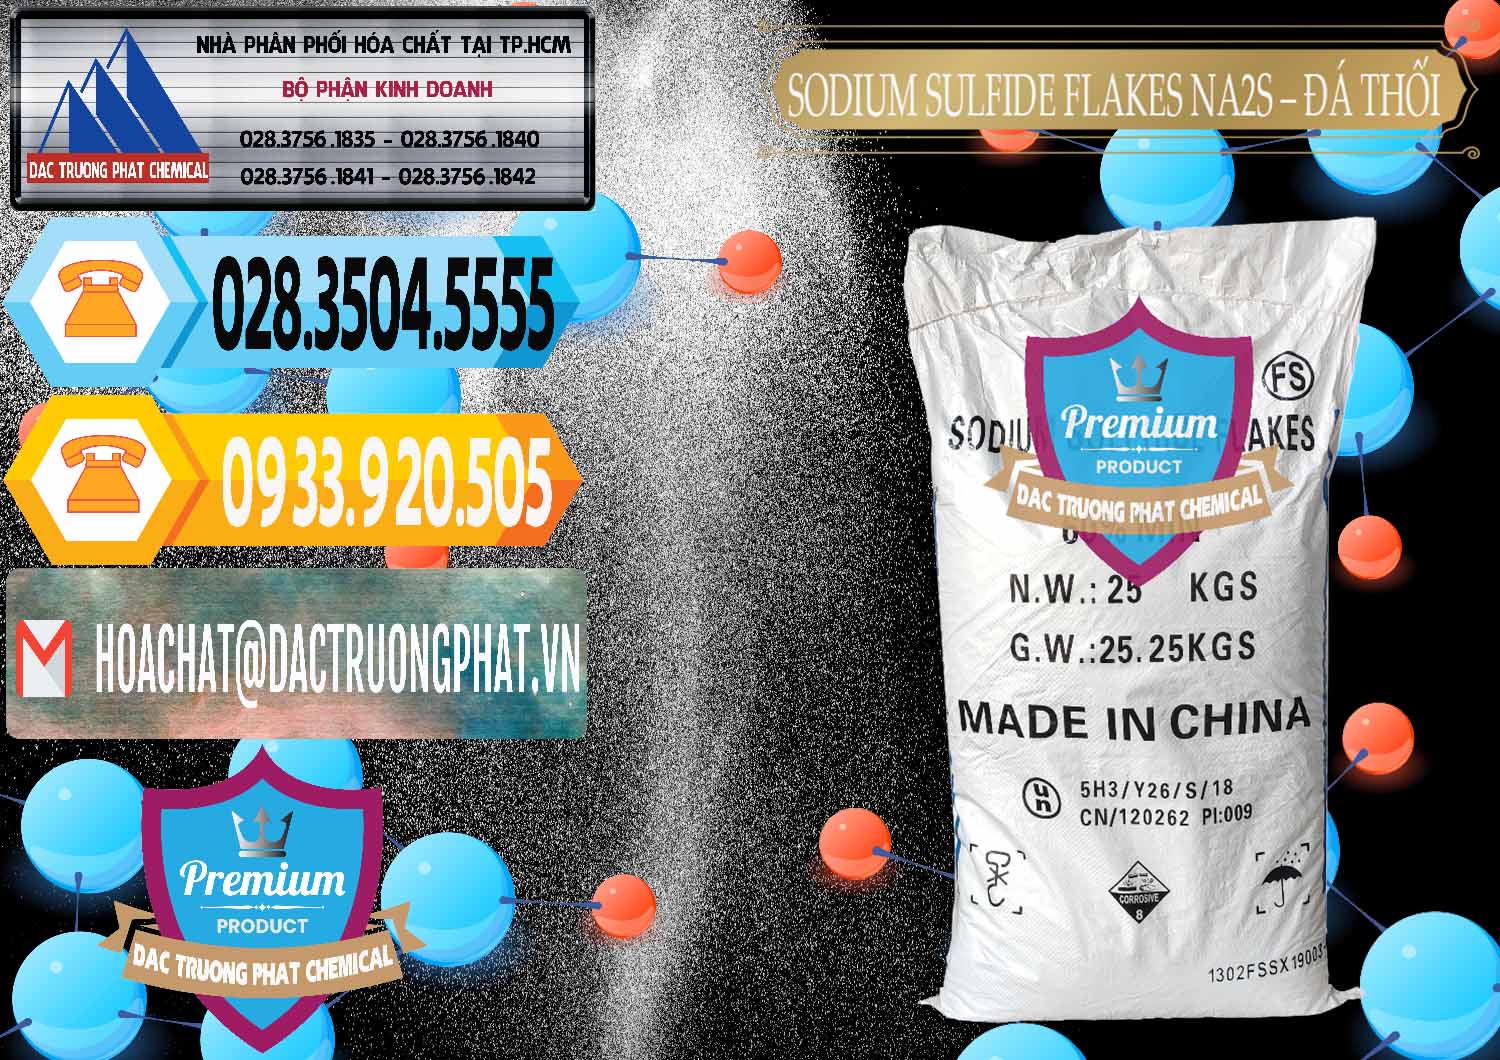 Kinh doanh ( bán ) Sodium Sulfide Flakes NA2S – Đá Thối Đỏ Trung Quốc China - 0150 - Nơi chuyên phân phối và cung ứng hóa chất tại TP.HCM - hoachattayrua.net